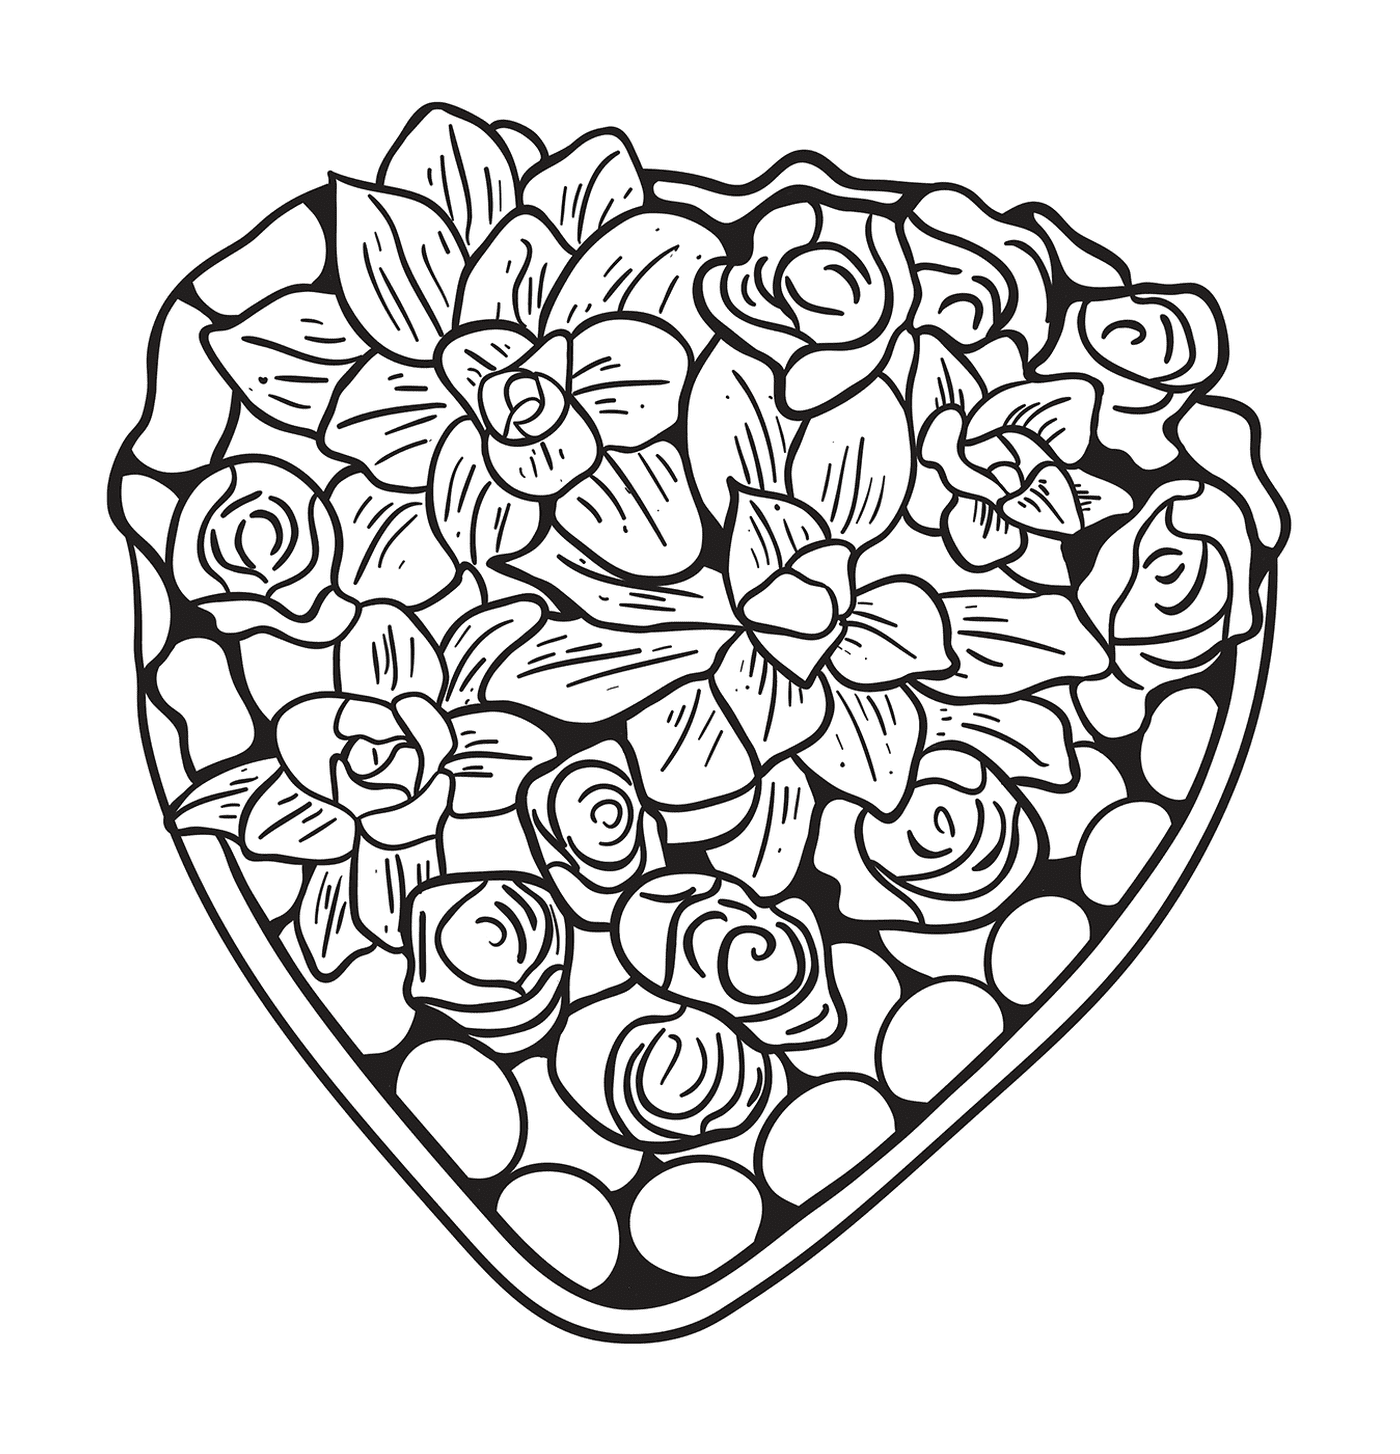  Bel cuore composto da fiori e rose 